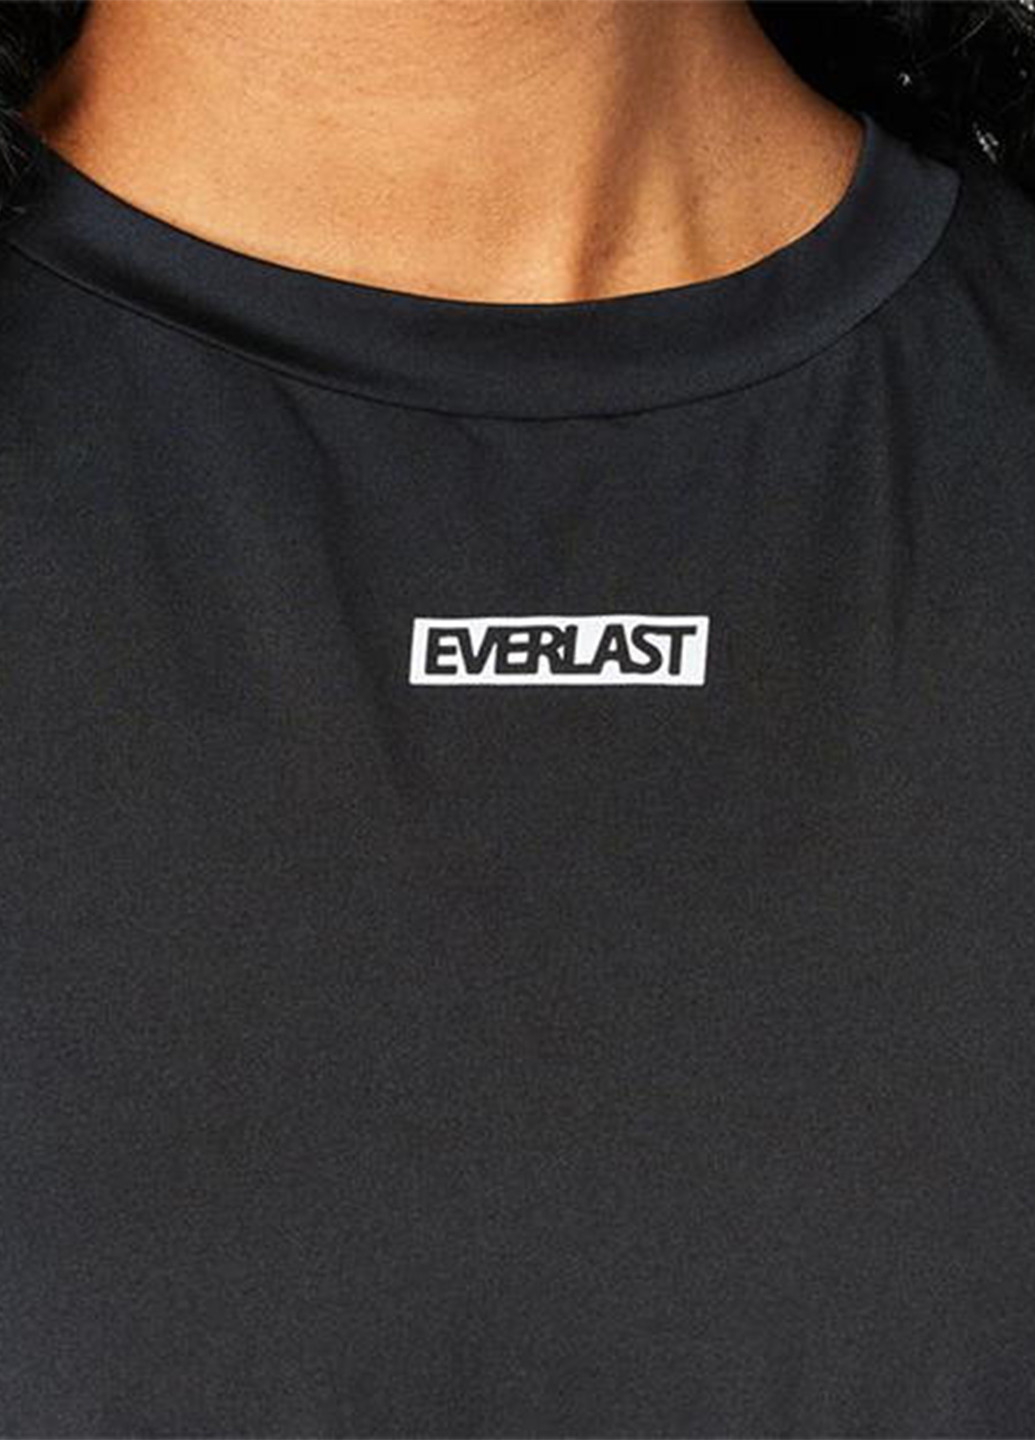 Комбінезон Everlast комбінезон-шорти напис чорний спортивний поліестер